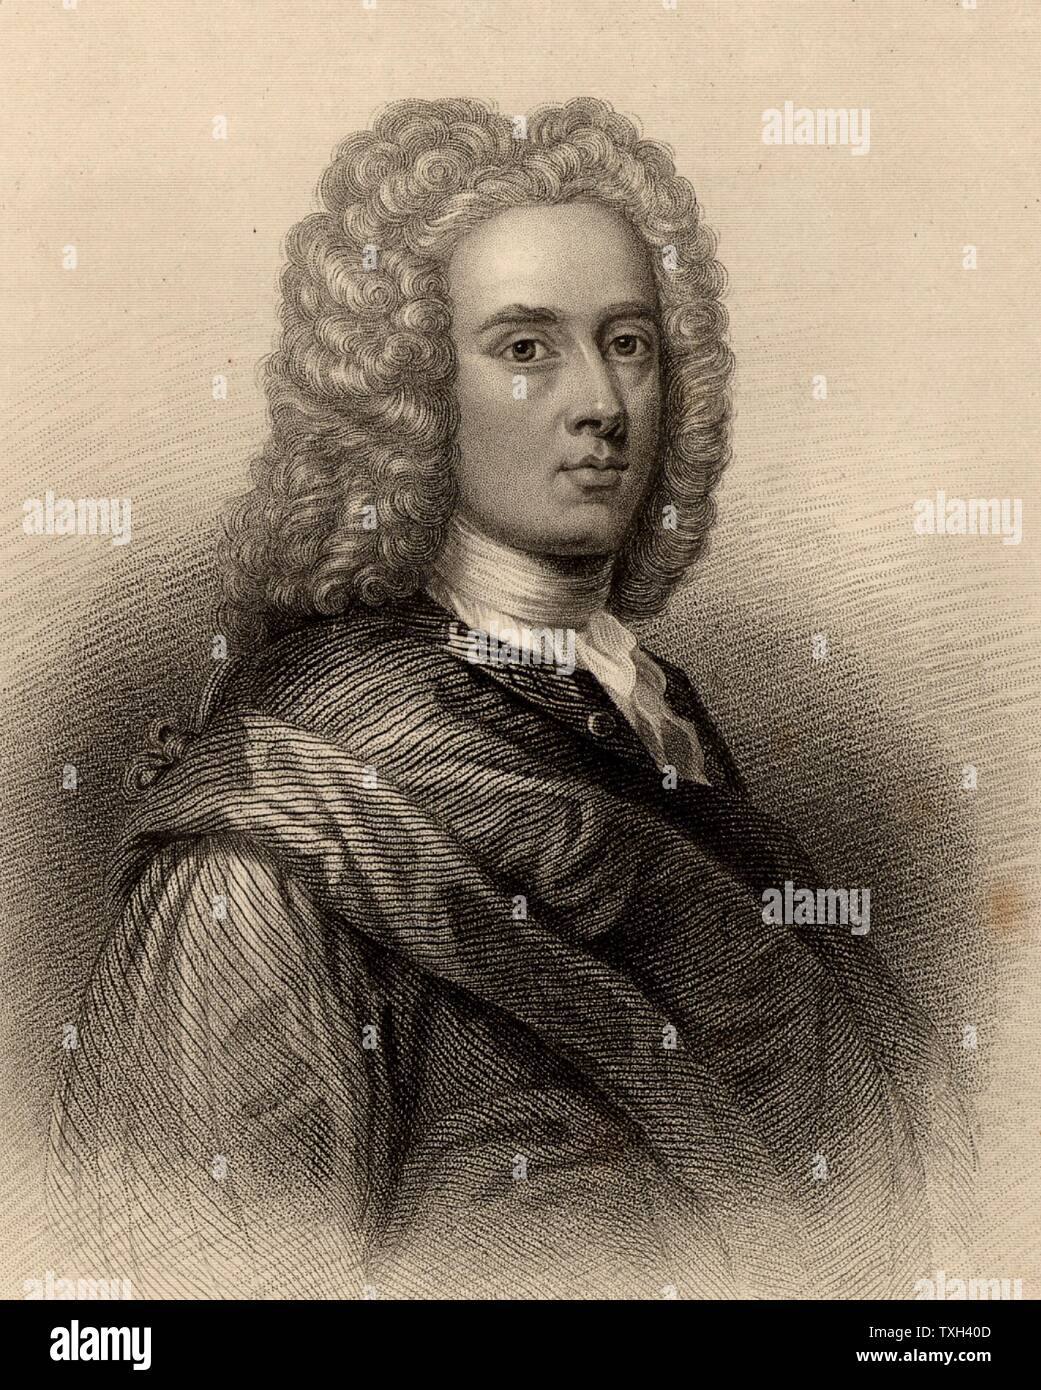 William Aikman (1682-1731) retratista escocés. Grabado de un "Diccionario Biográfico de eminentes Scotsmen' de Thomas Thomson (1870). Foto de stock